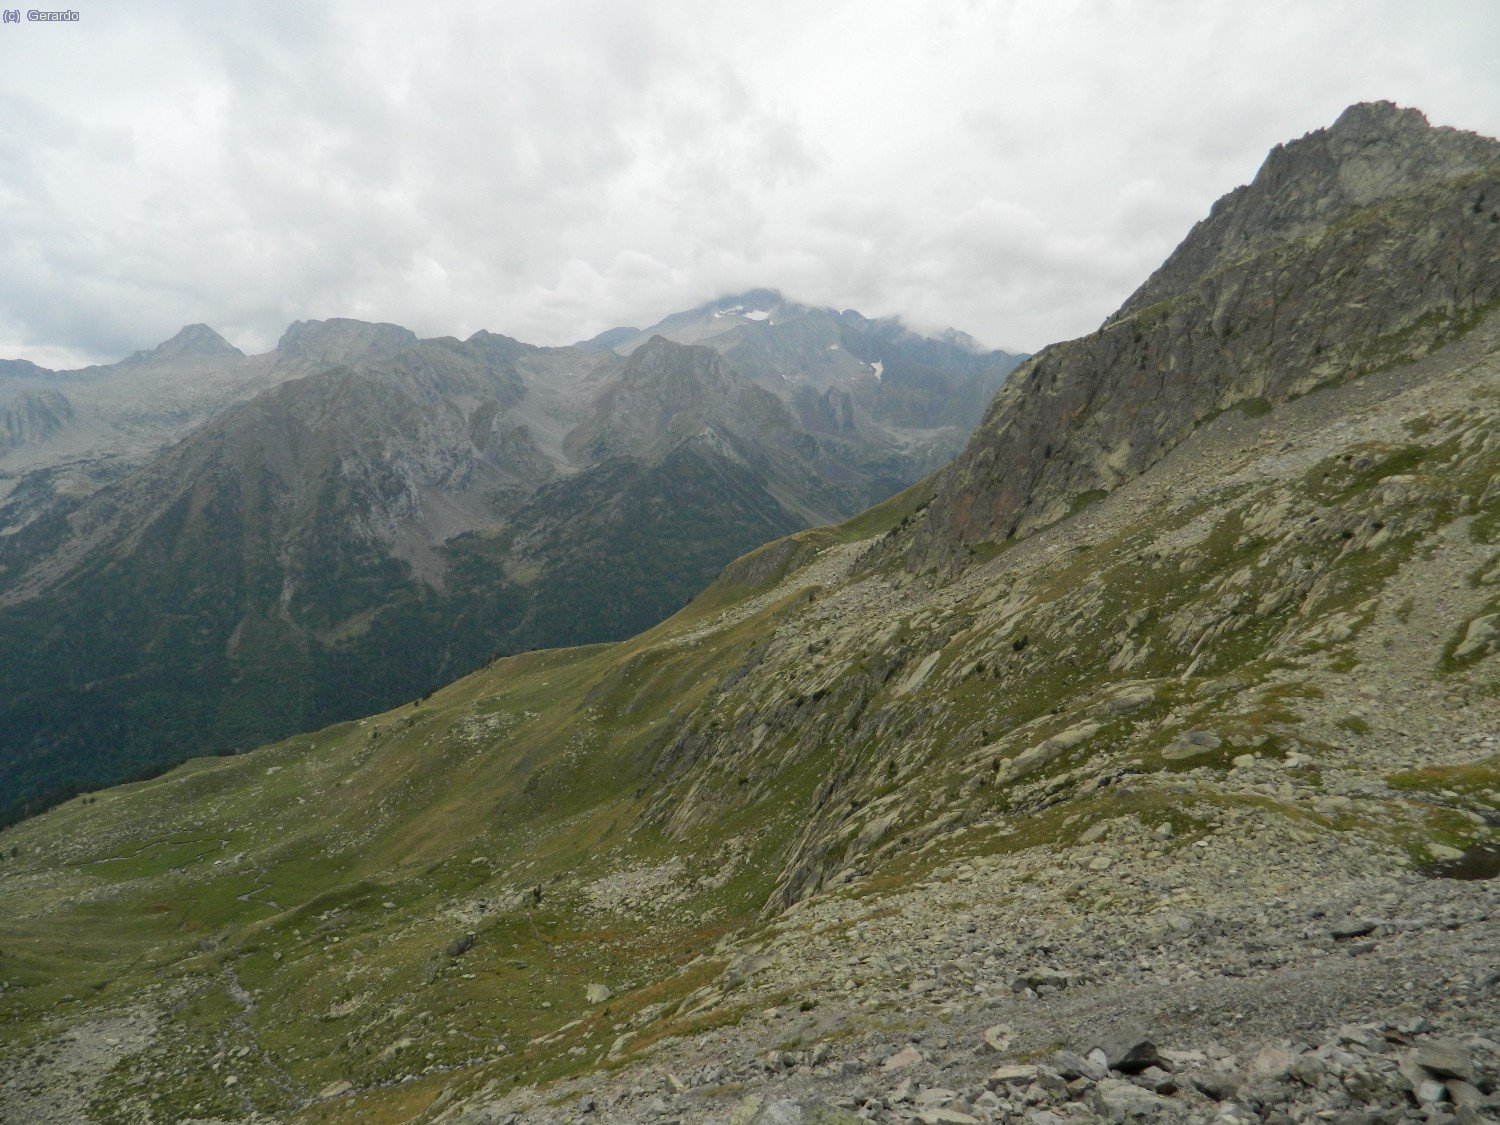 Un vistazo hacia el suodeste, con el Posets medio nublado en el centro, y el Escorvets, piramidal, a la izquierda.